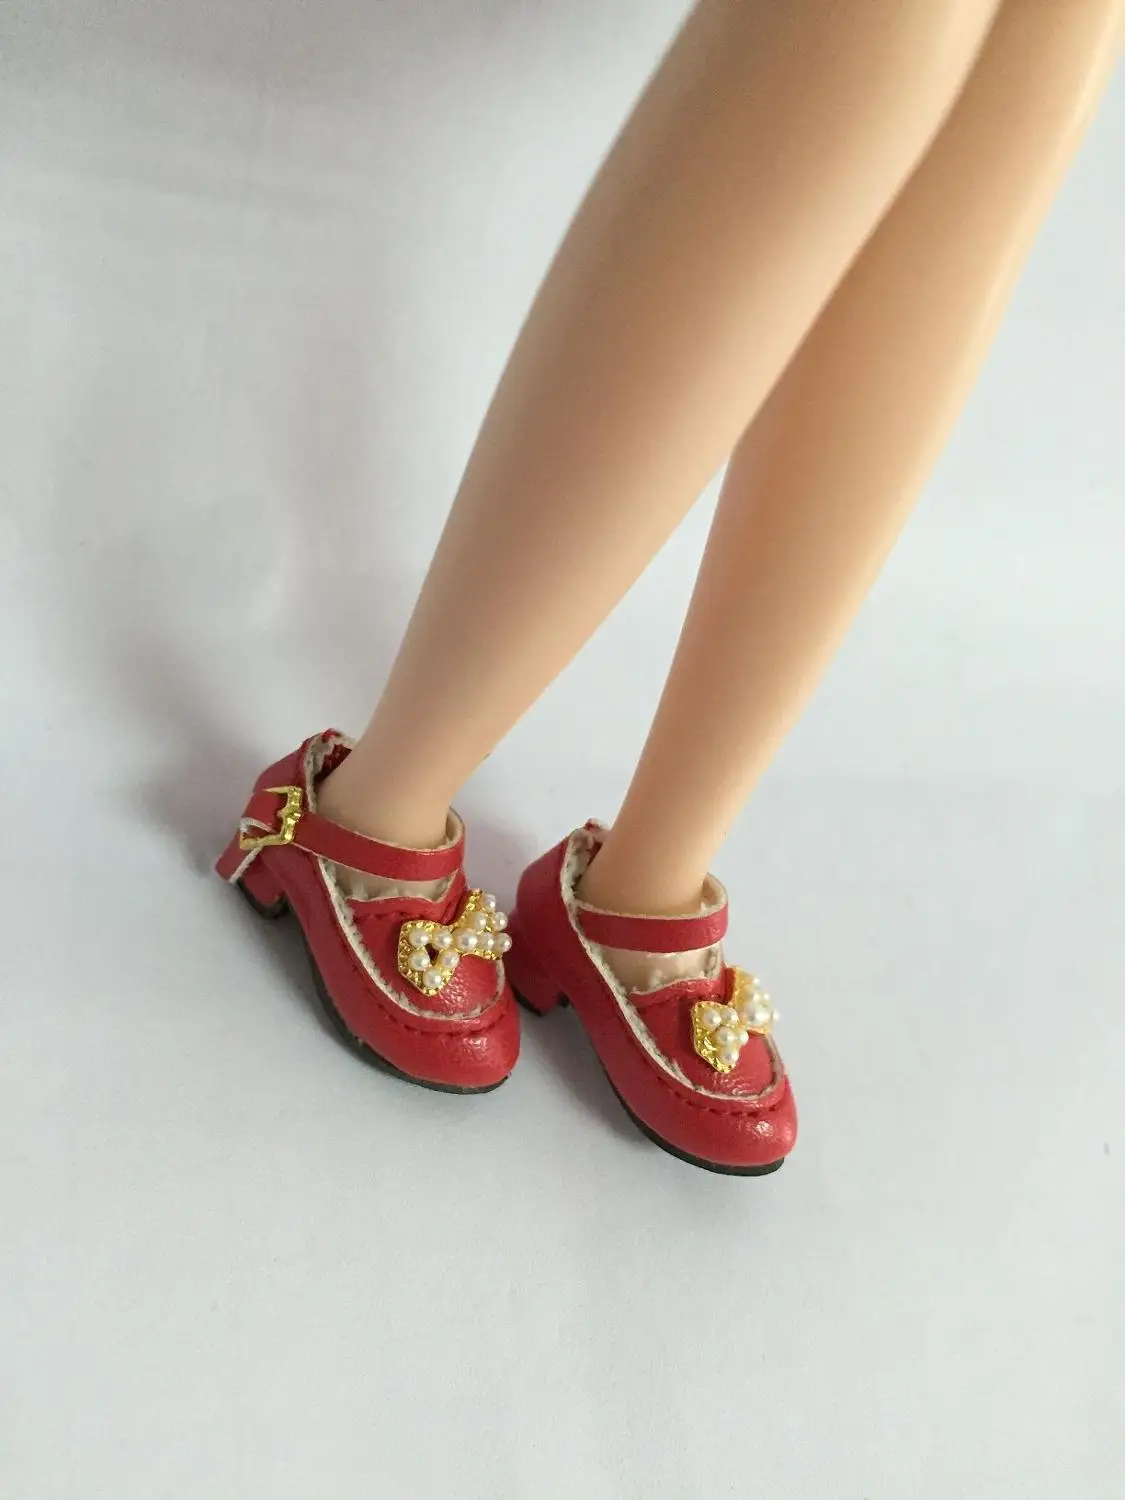 Куклы обувь для blyth Azone куклы OB кукла licca и т. д. Длина: 2,8 см повседневная обувь на плоской подошве - Цвет: red